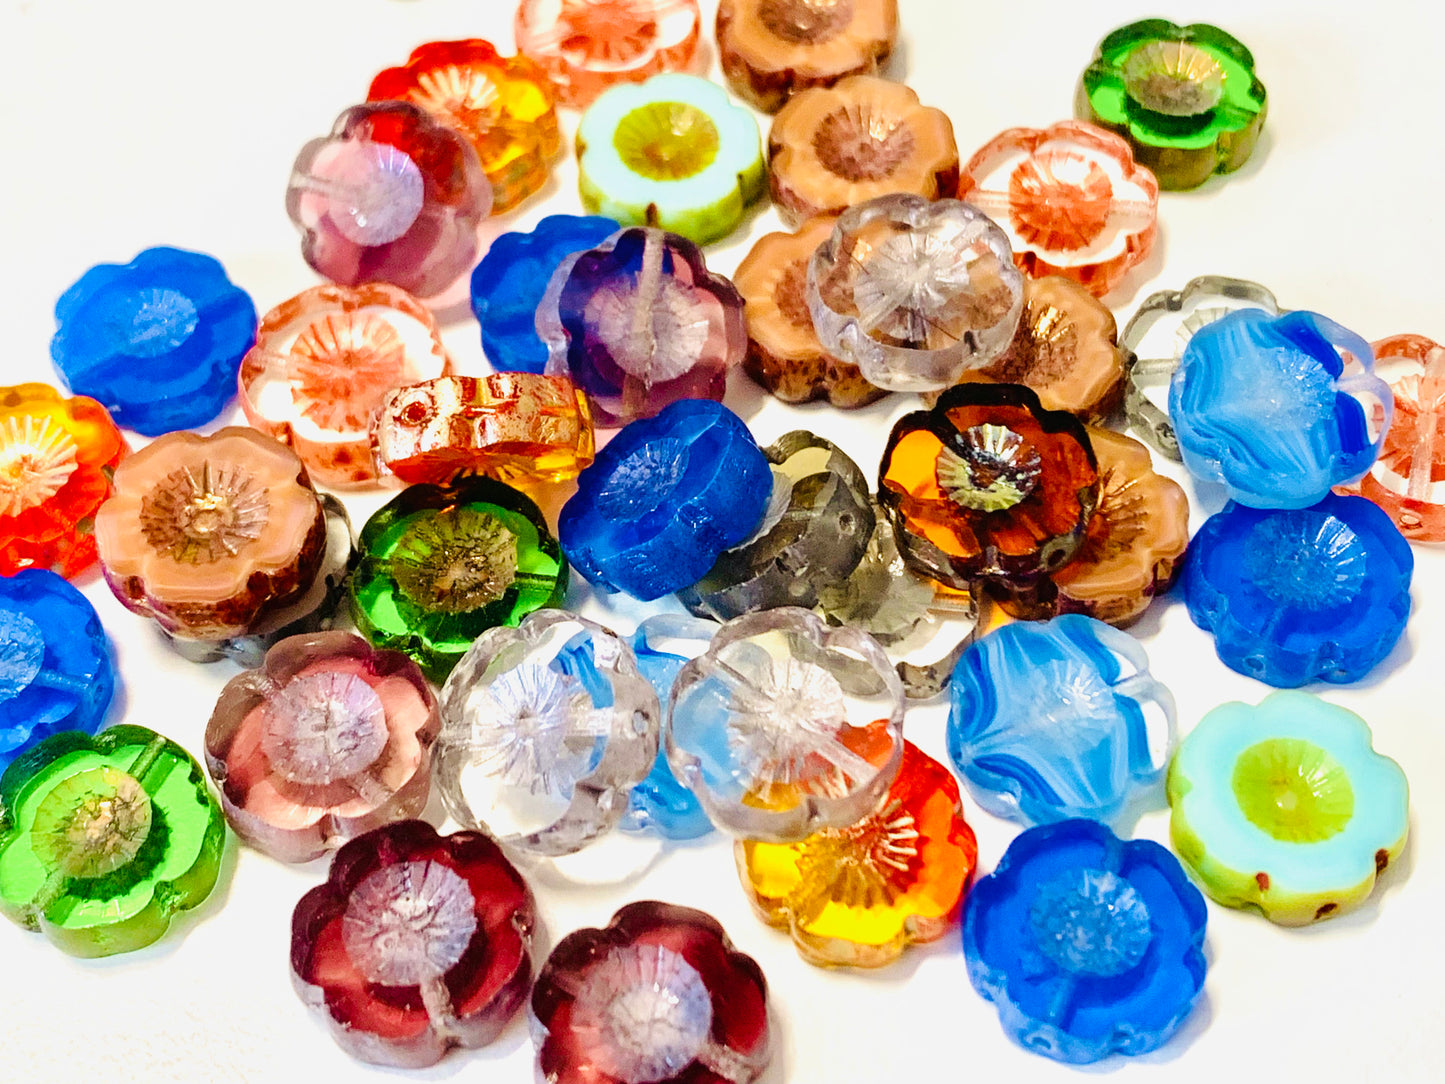 Tischgeschliffene runde Perlen Hawaii-Blumen, gemischte Farben, Farbe Glanzcreme (Mischfarbe 14401), Glas, Tschechische Republik